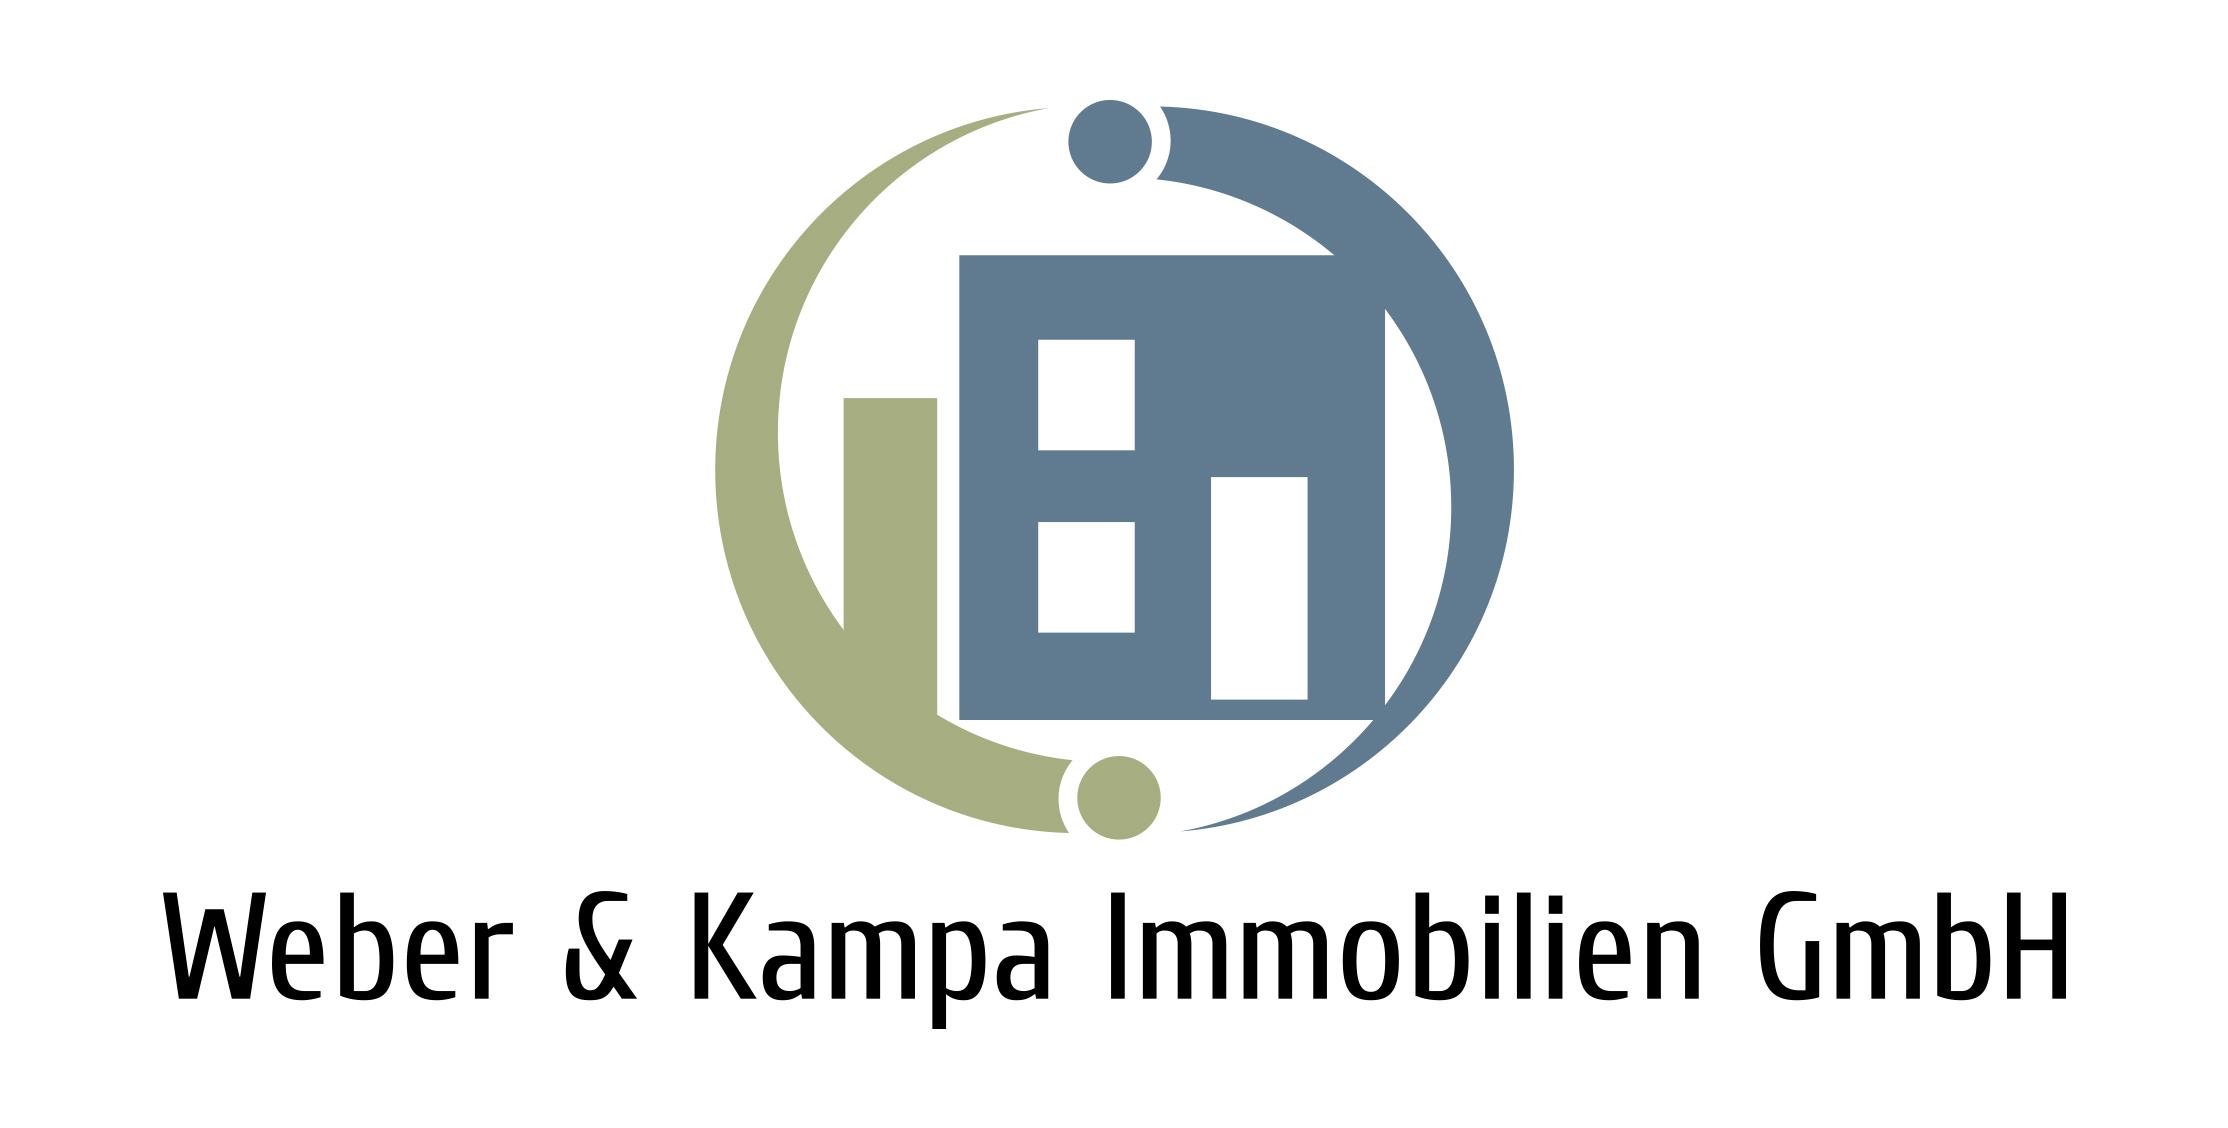 Weber & Kampa Immobilien GmbH